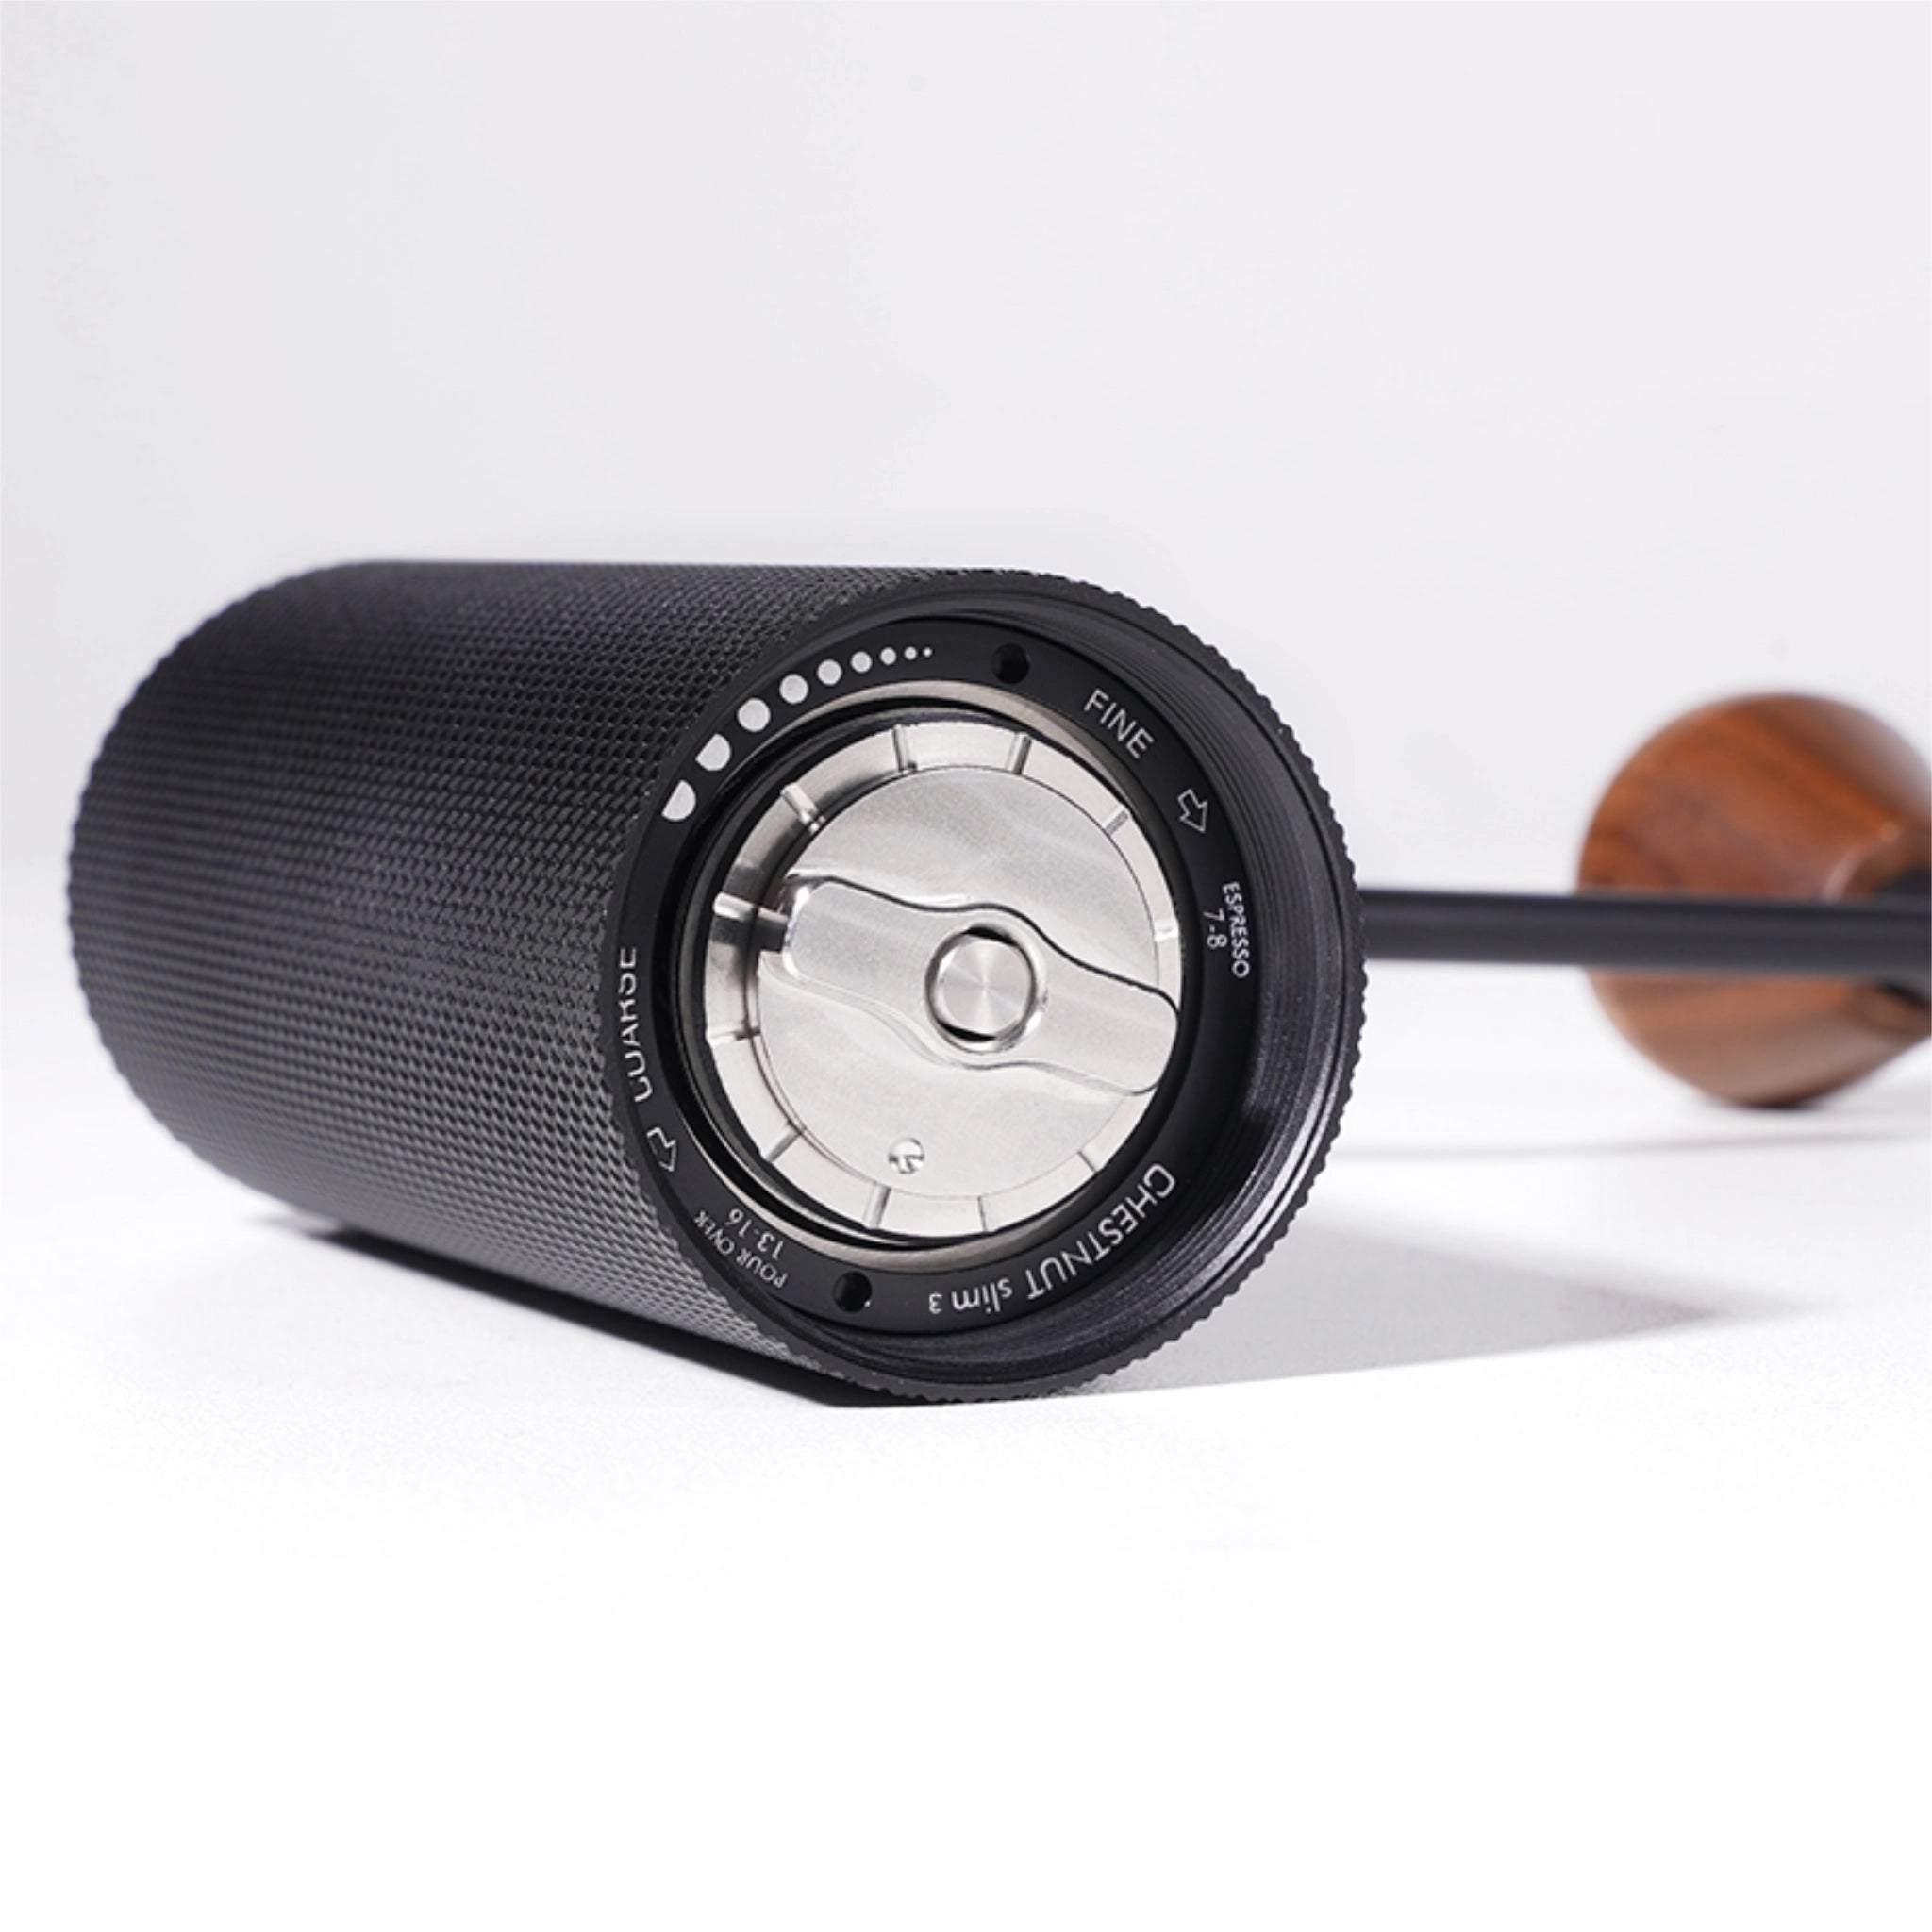 Produktbild der Mahlgrad-Einstellung der Kaffeemühle Timemore Chestnut Slim 3 in schwarzem Aluminium-Finish. 